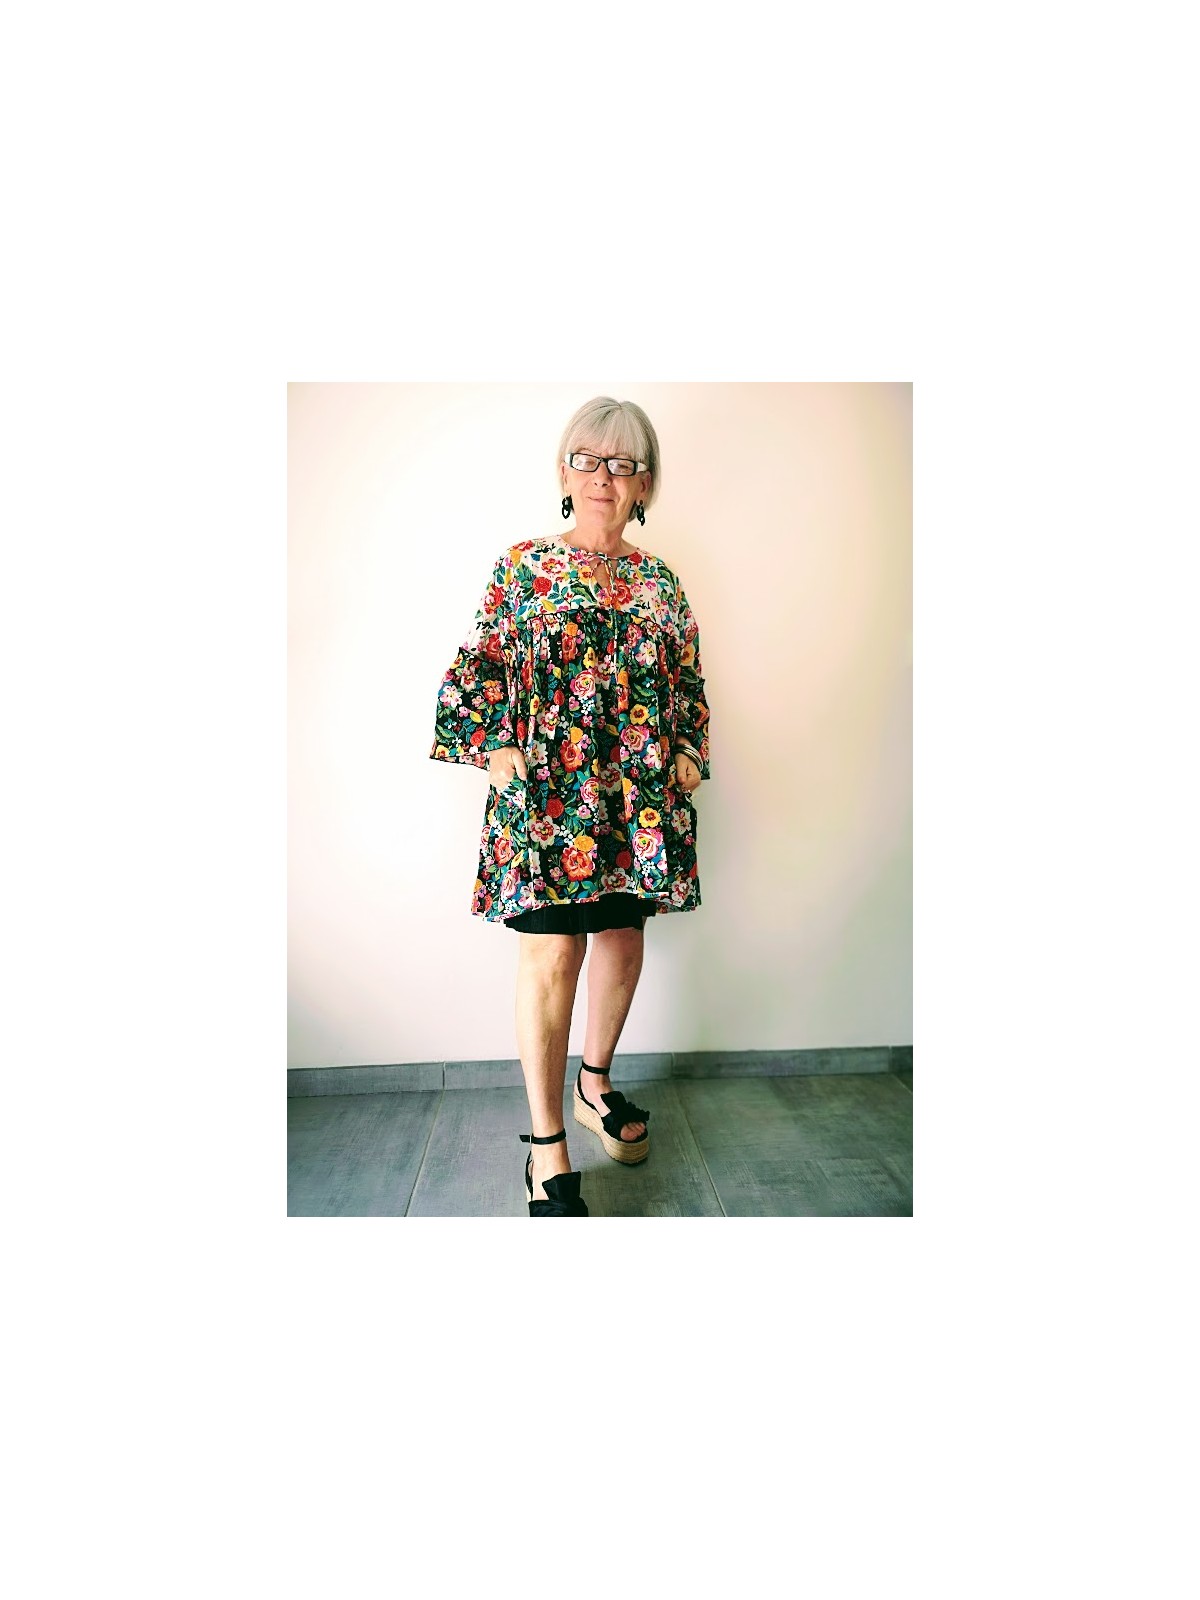 Blouse l'été de Jeanne Daysie l vue de face l tilleulmenthe mode boutique de vêtements femme